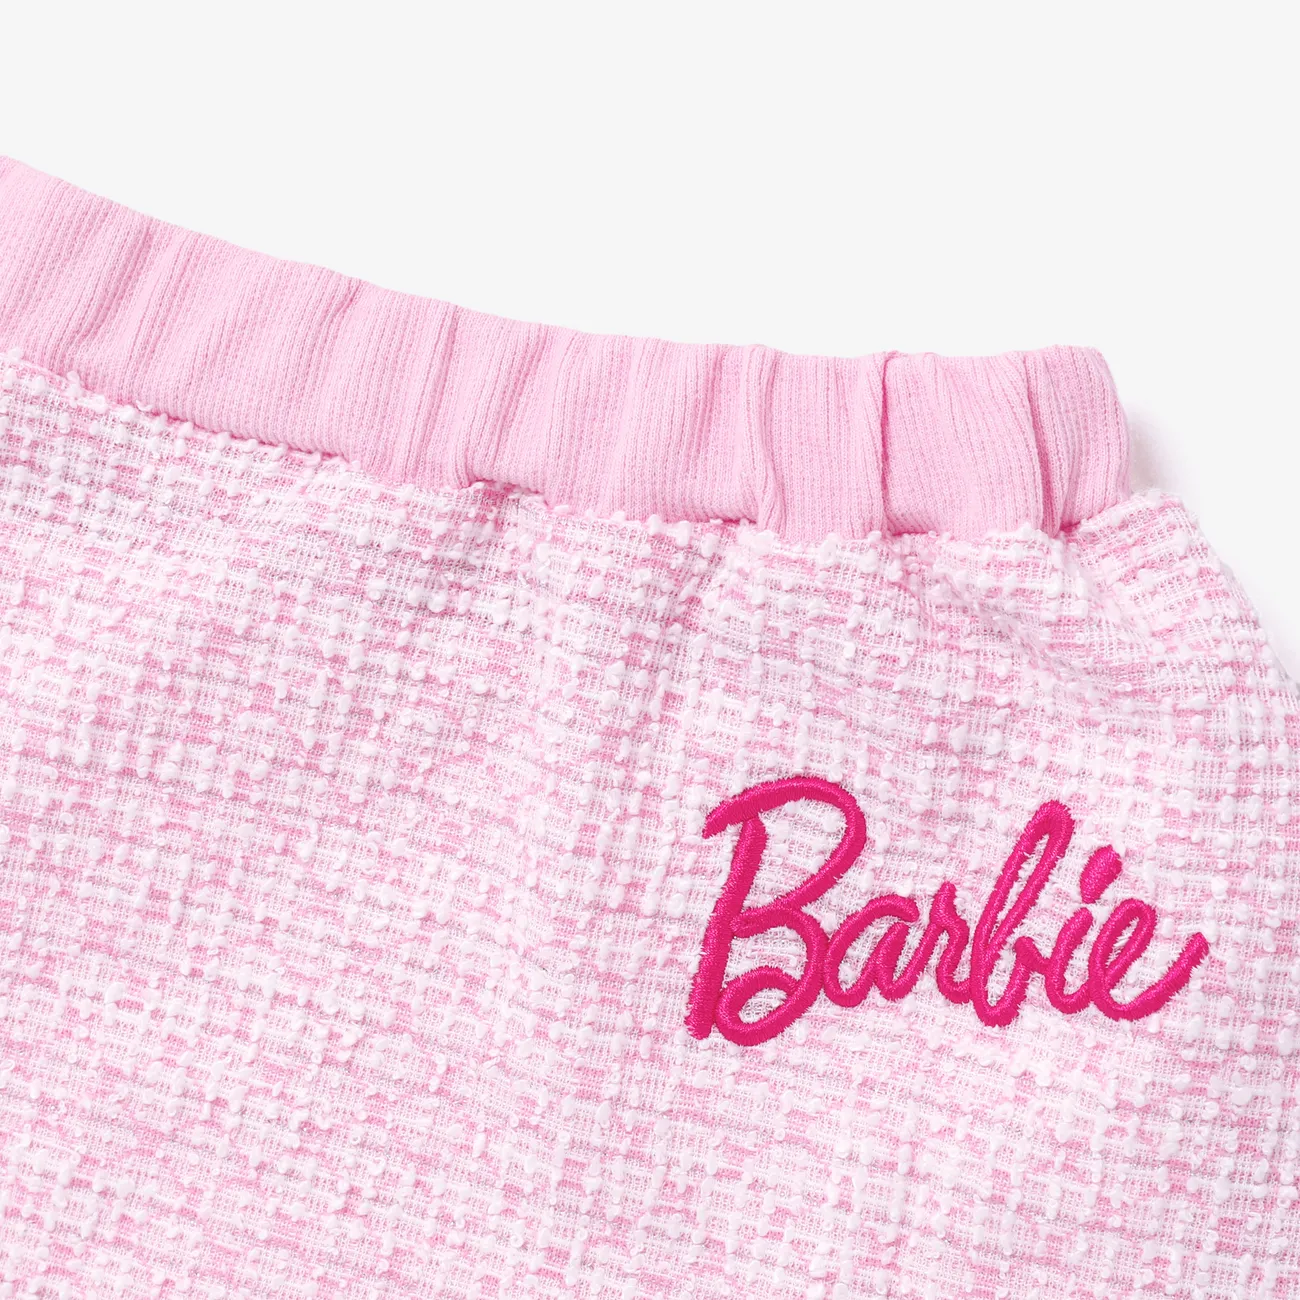 Barbie Dia da Mãe IP Menina Botão Bonito Fato saia e casaco encarnadinepink big image 1